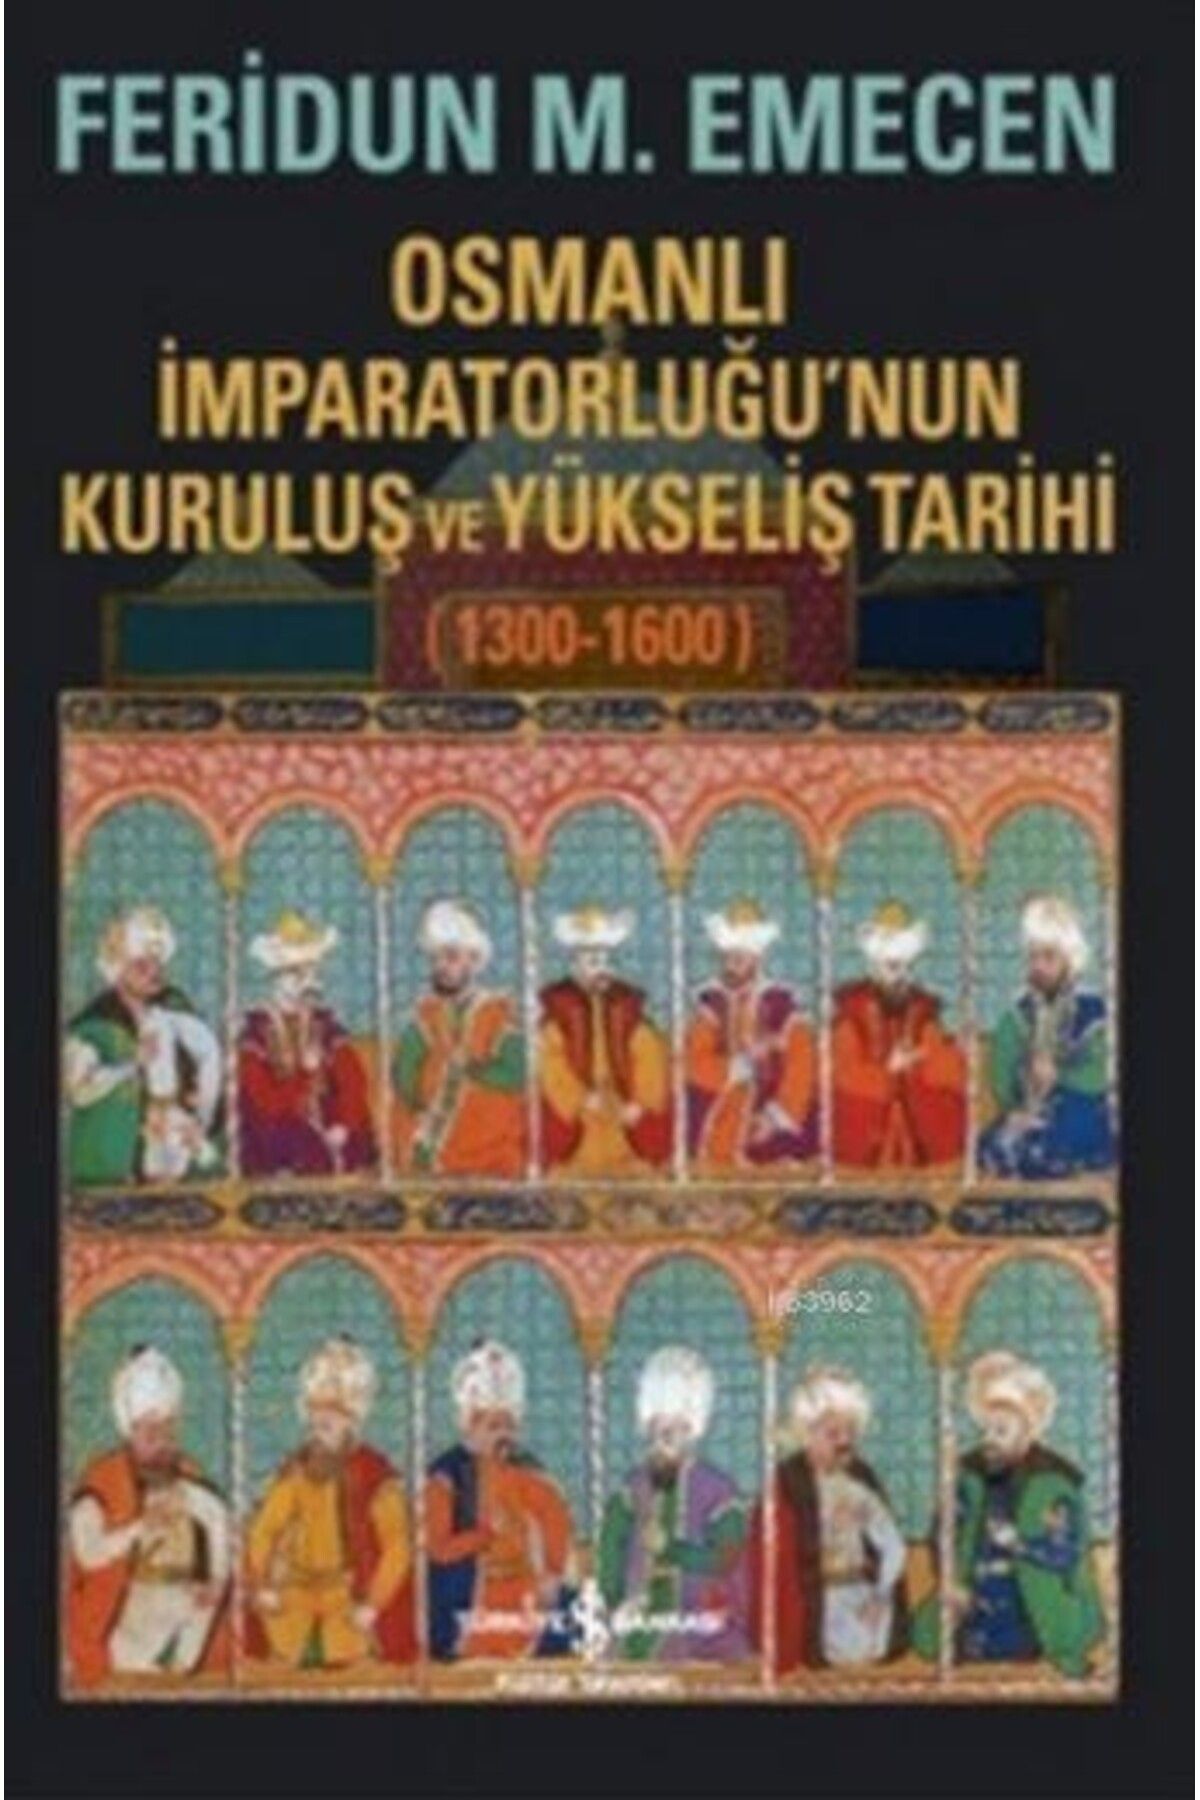 Türkiye İş Bankası Kültür Yayınları Osmanlı Imparatorluğunun Kuruluş Ve Yükseliş Tarihi